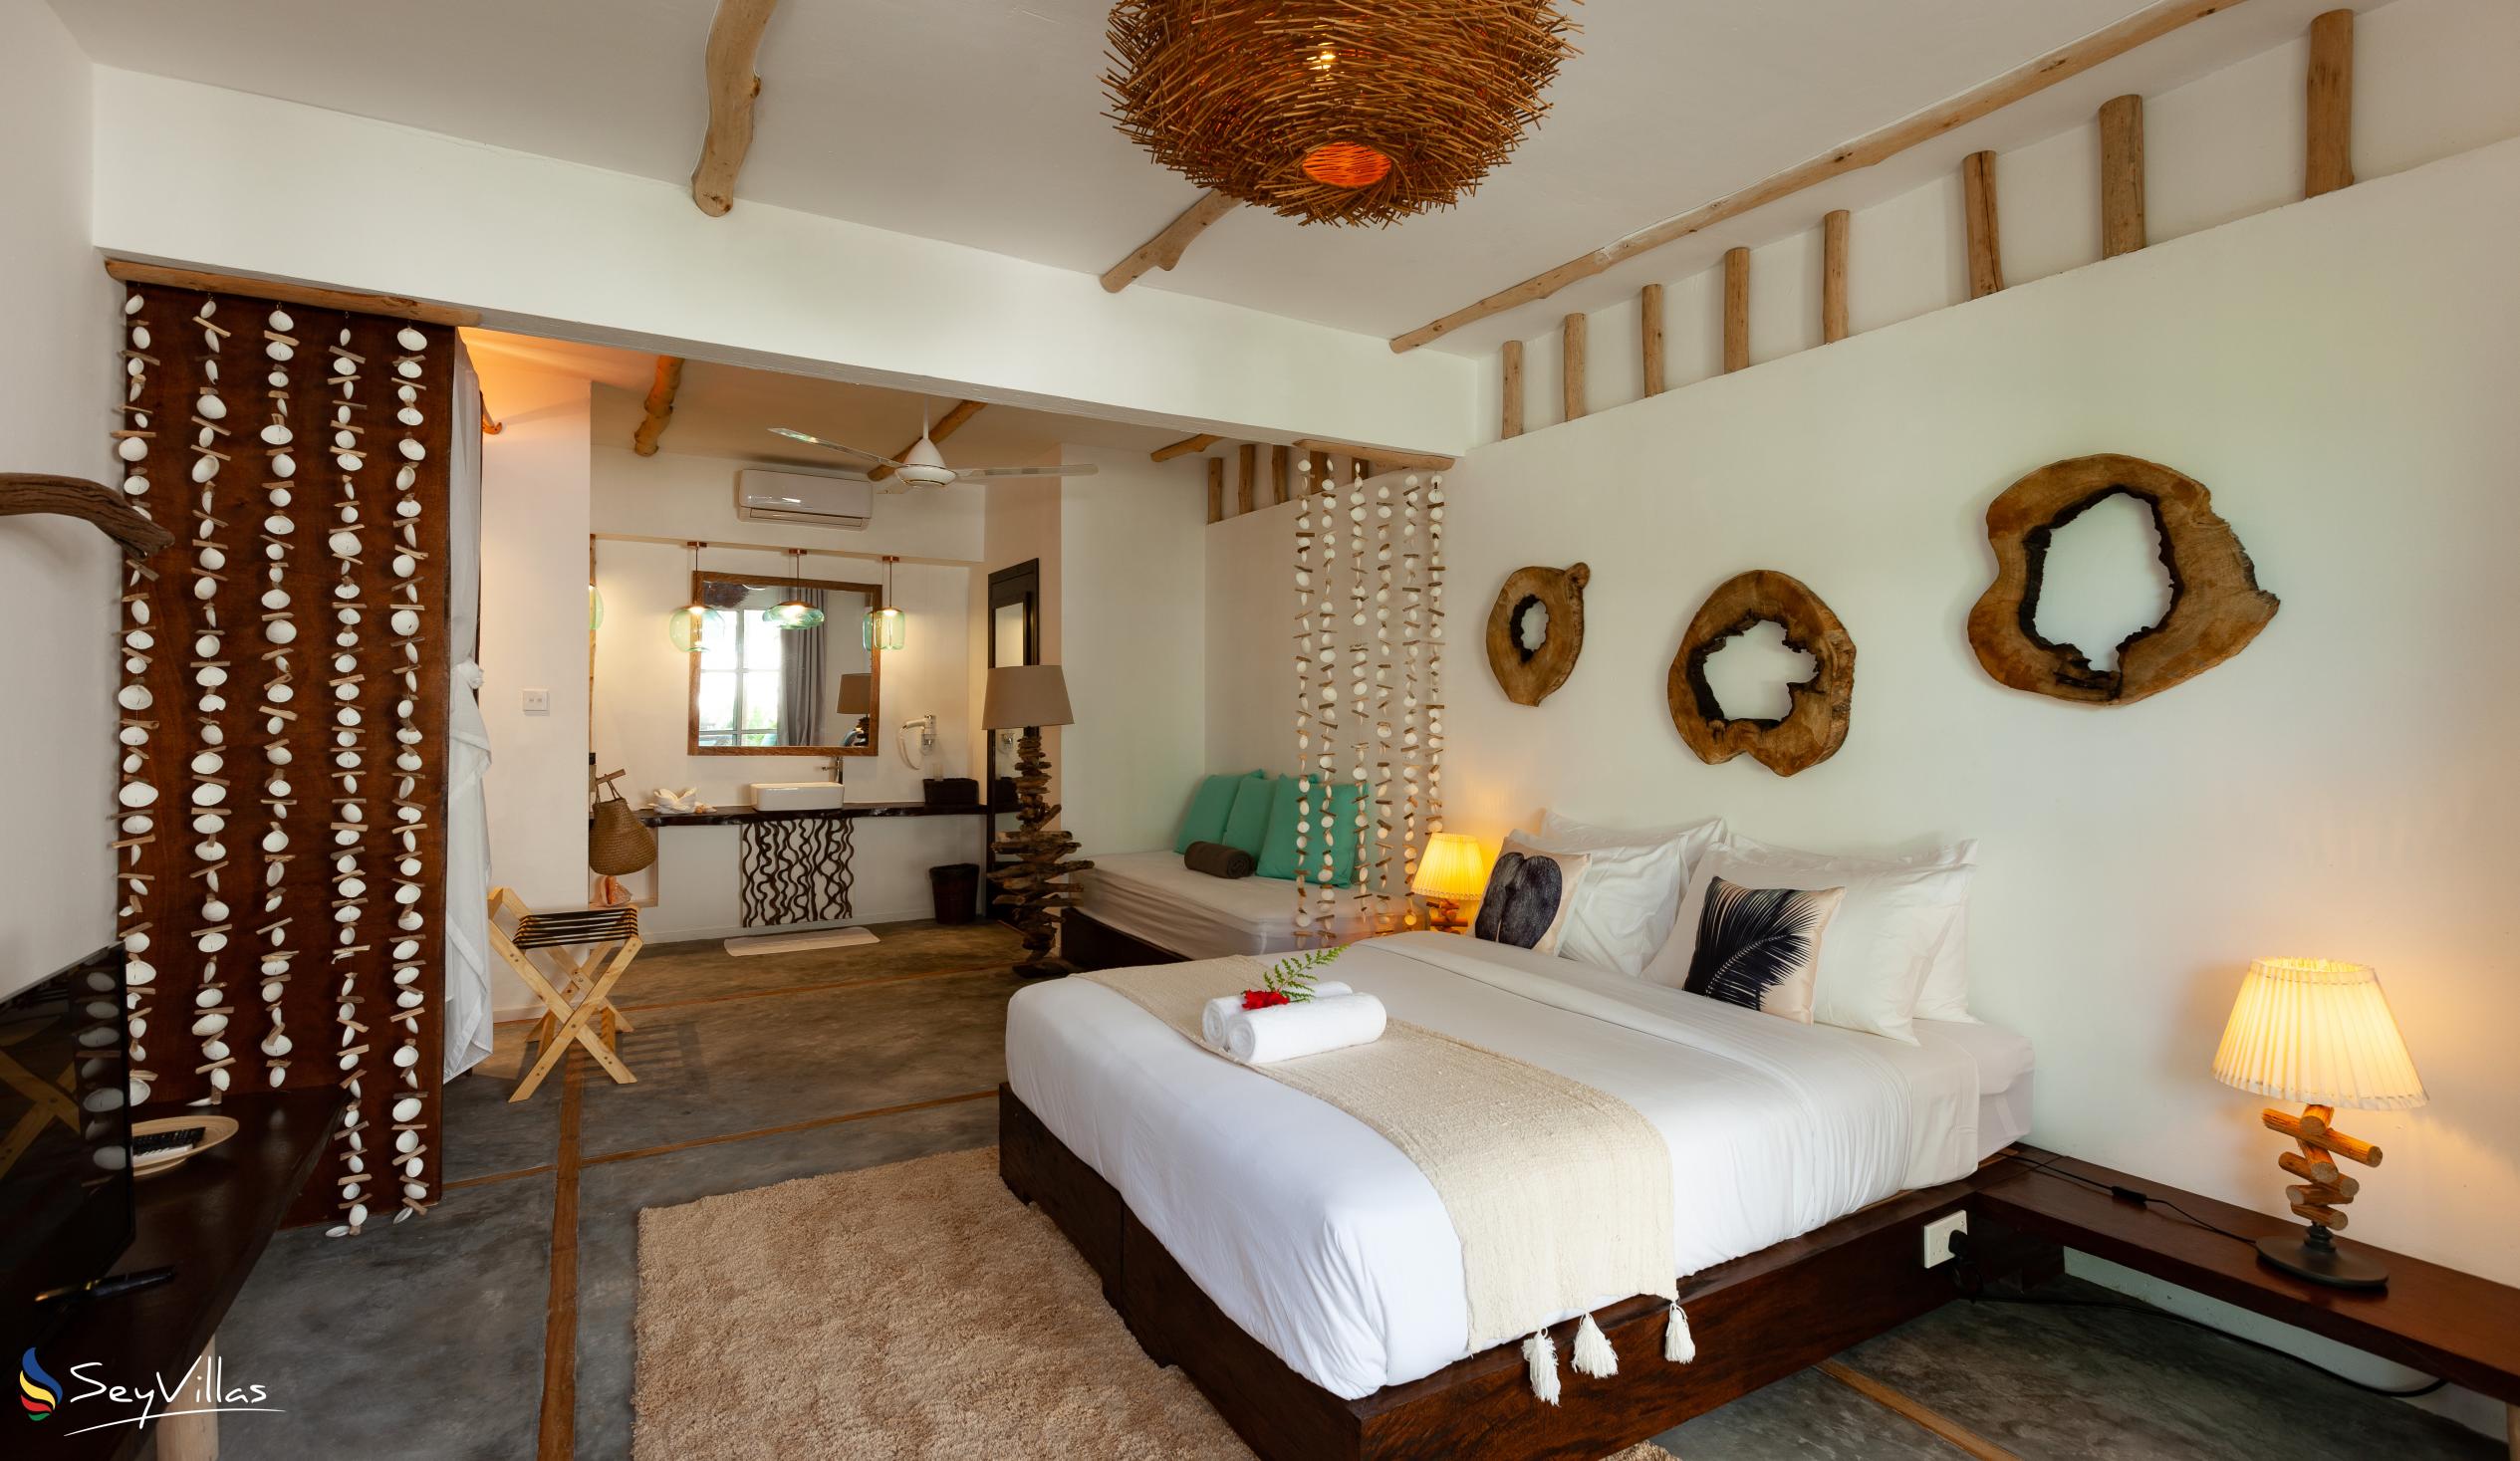 Foto 114: Bliss Hotel Praslin - Beach House - Chambre Beach Garden - Praslin (Seychelles)